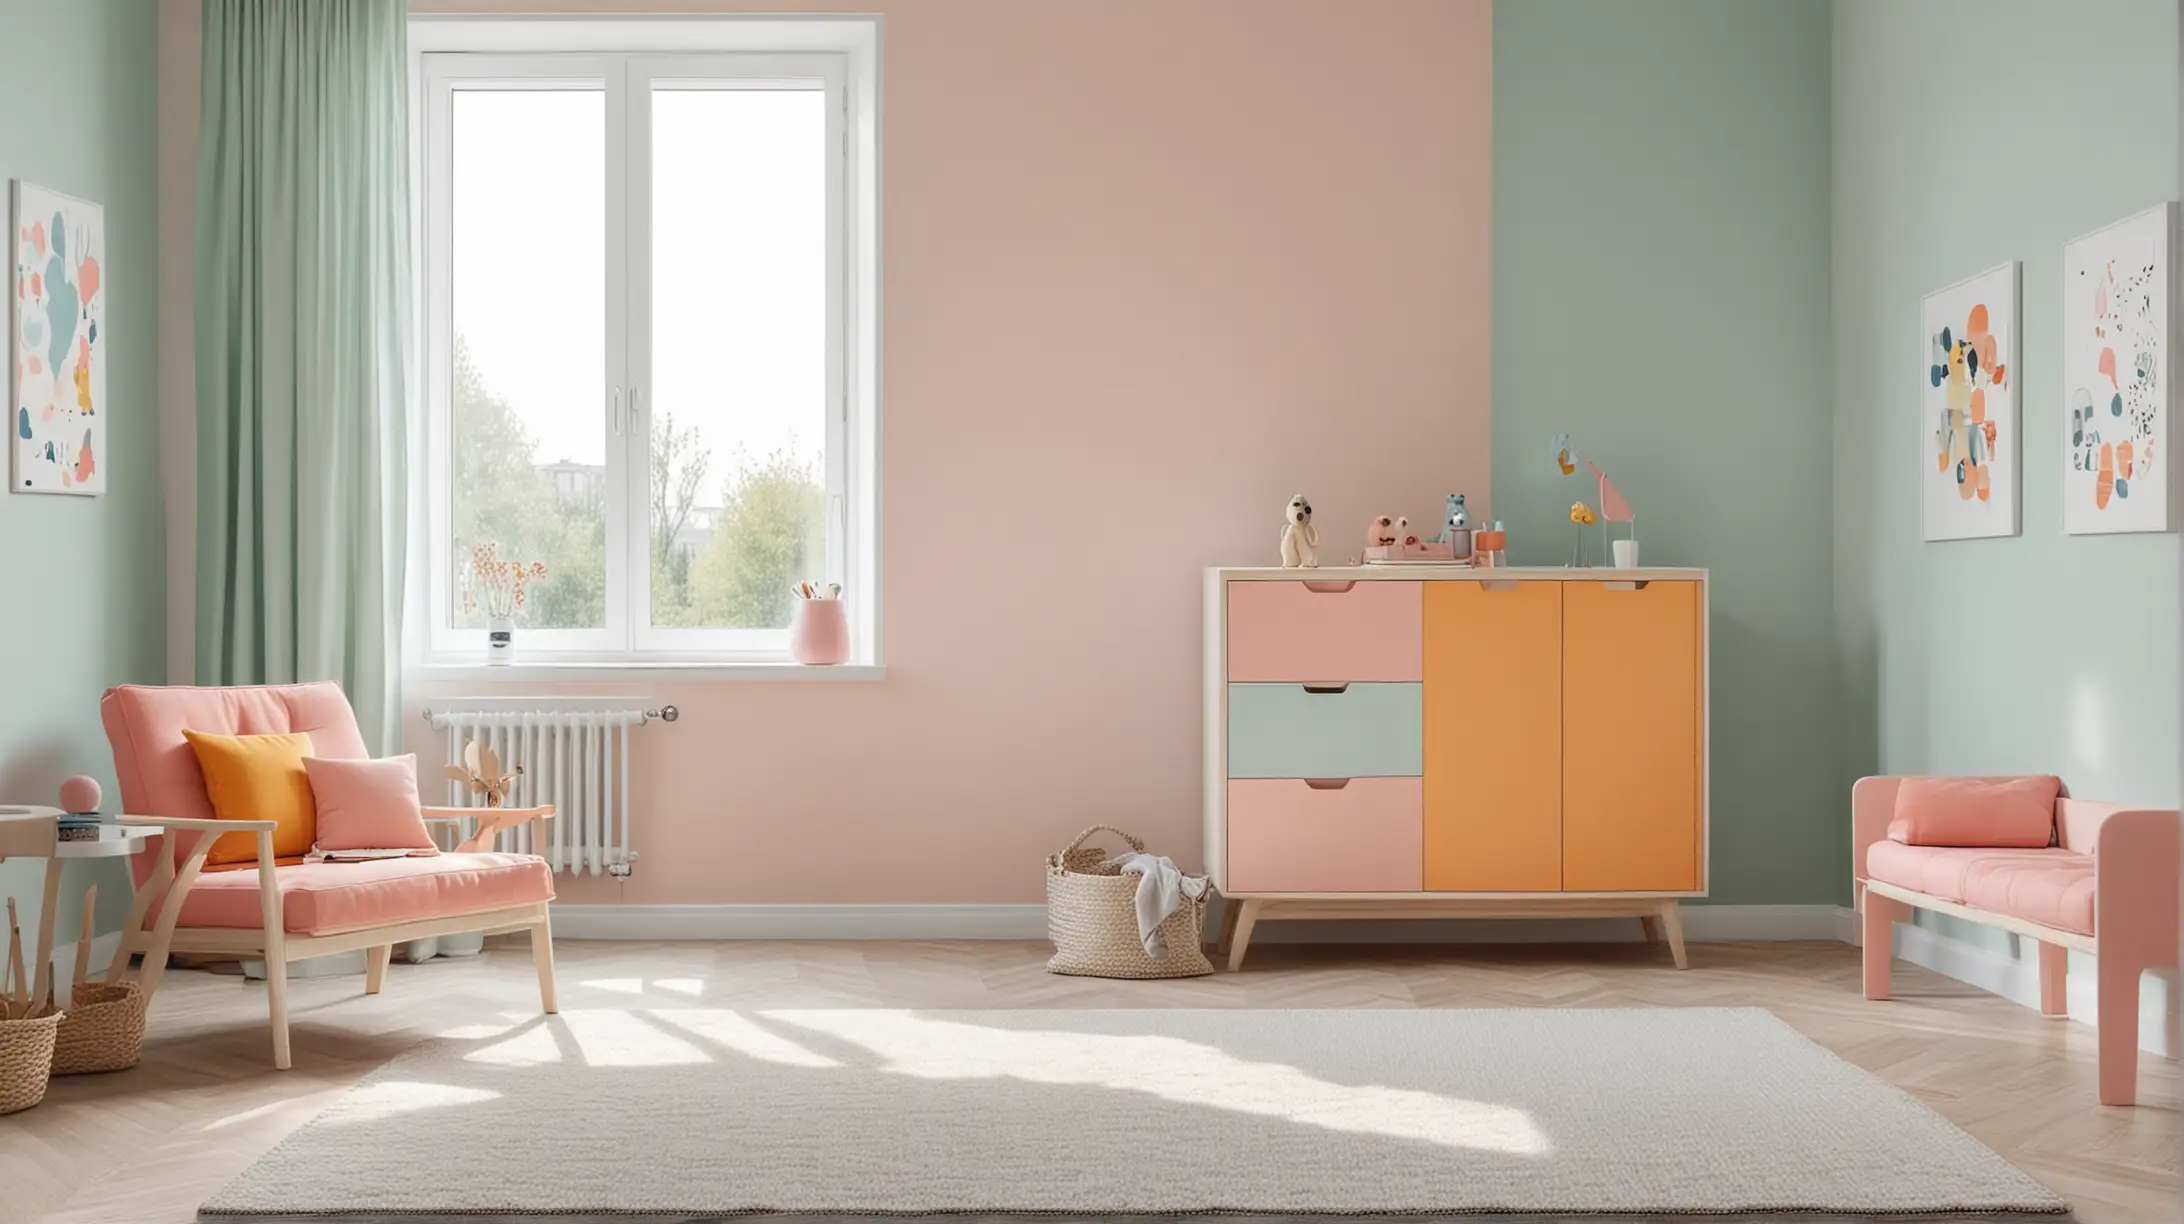 Moderner Innenraum eines Kinderzimmers mit Designermöbeln und Color Blocking in kräftigen, hellen und kontrastreichen Farbtönen, Minimalistisch, helle freudlichen Pastelltöne, Schrankoberflächen, spannende Perspektive mit Blick nach draußen 